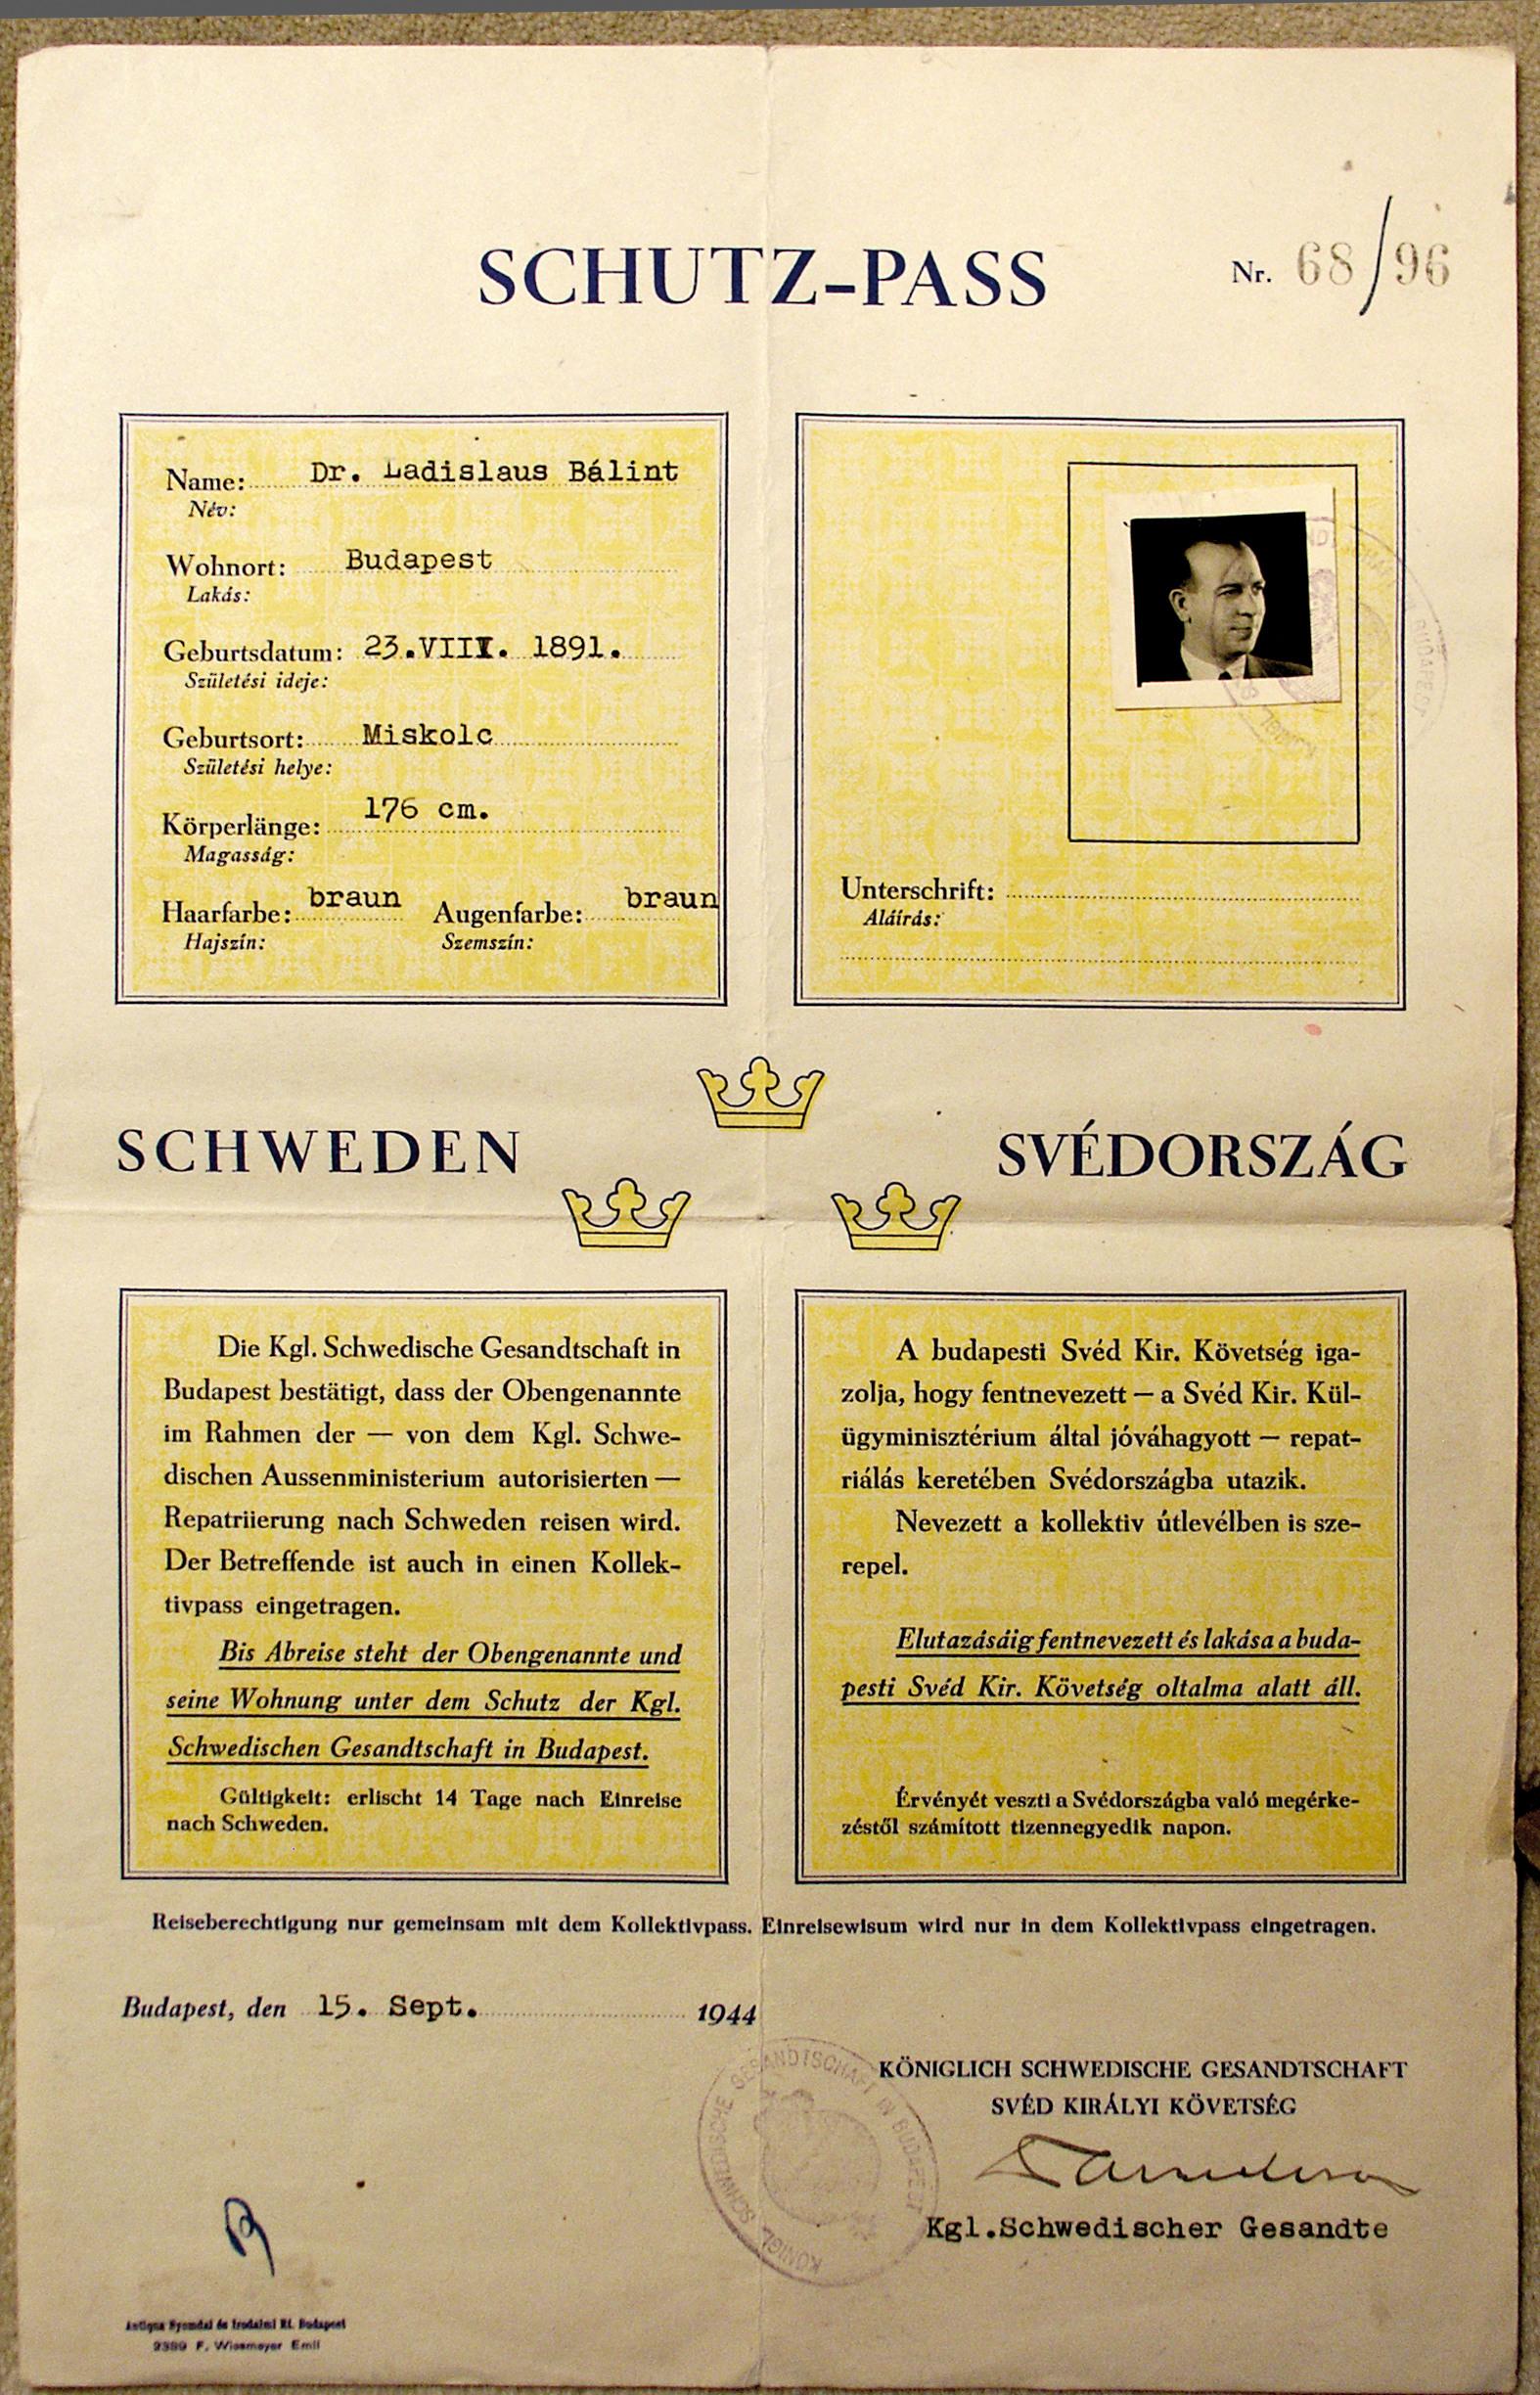 جواز سفر سويدي للحماية باللونين الأزرق والأصفر.